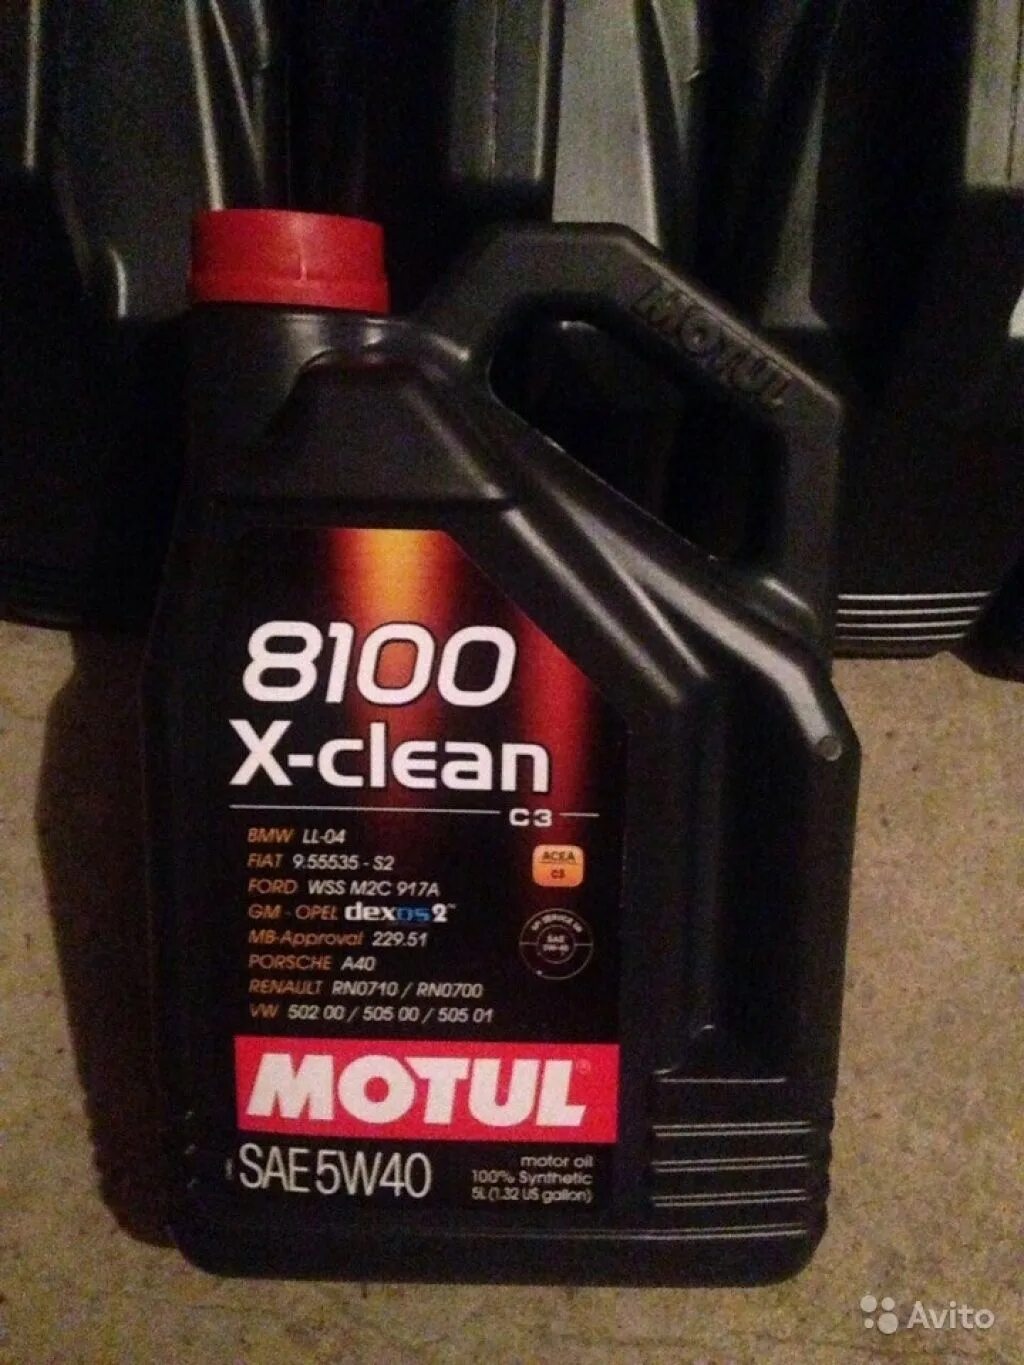 Motul 8100 x-clean 5w40. 8100 X-clean SAE 5w 40. Motul x-clean 5w40. Motul 8100 x-clean 5w40 4л. Масло мотюль x clean